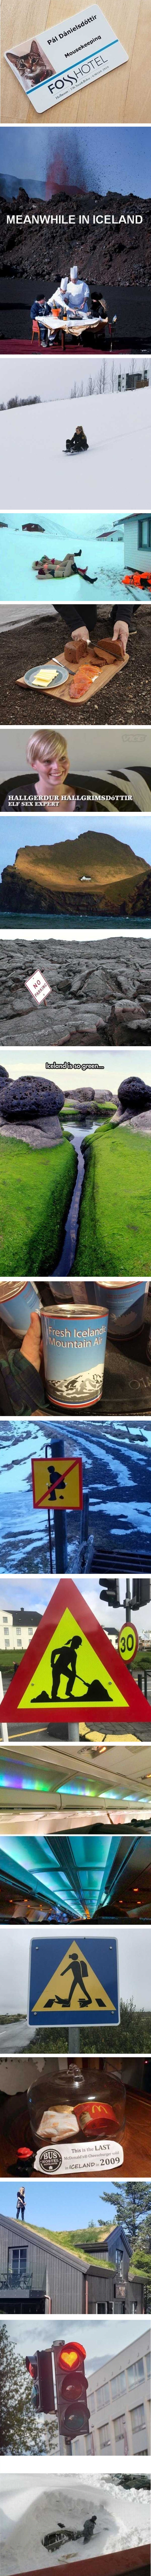 Zanimljivi i čudni prizori s Islanda dokaz su da se radi o posebnom mjestu 